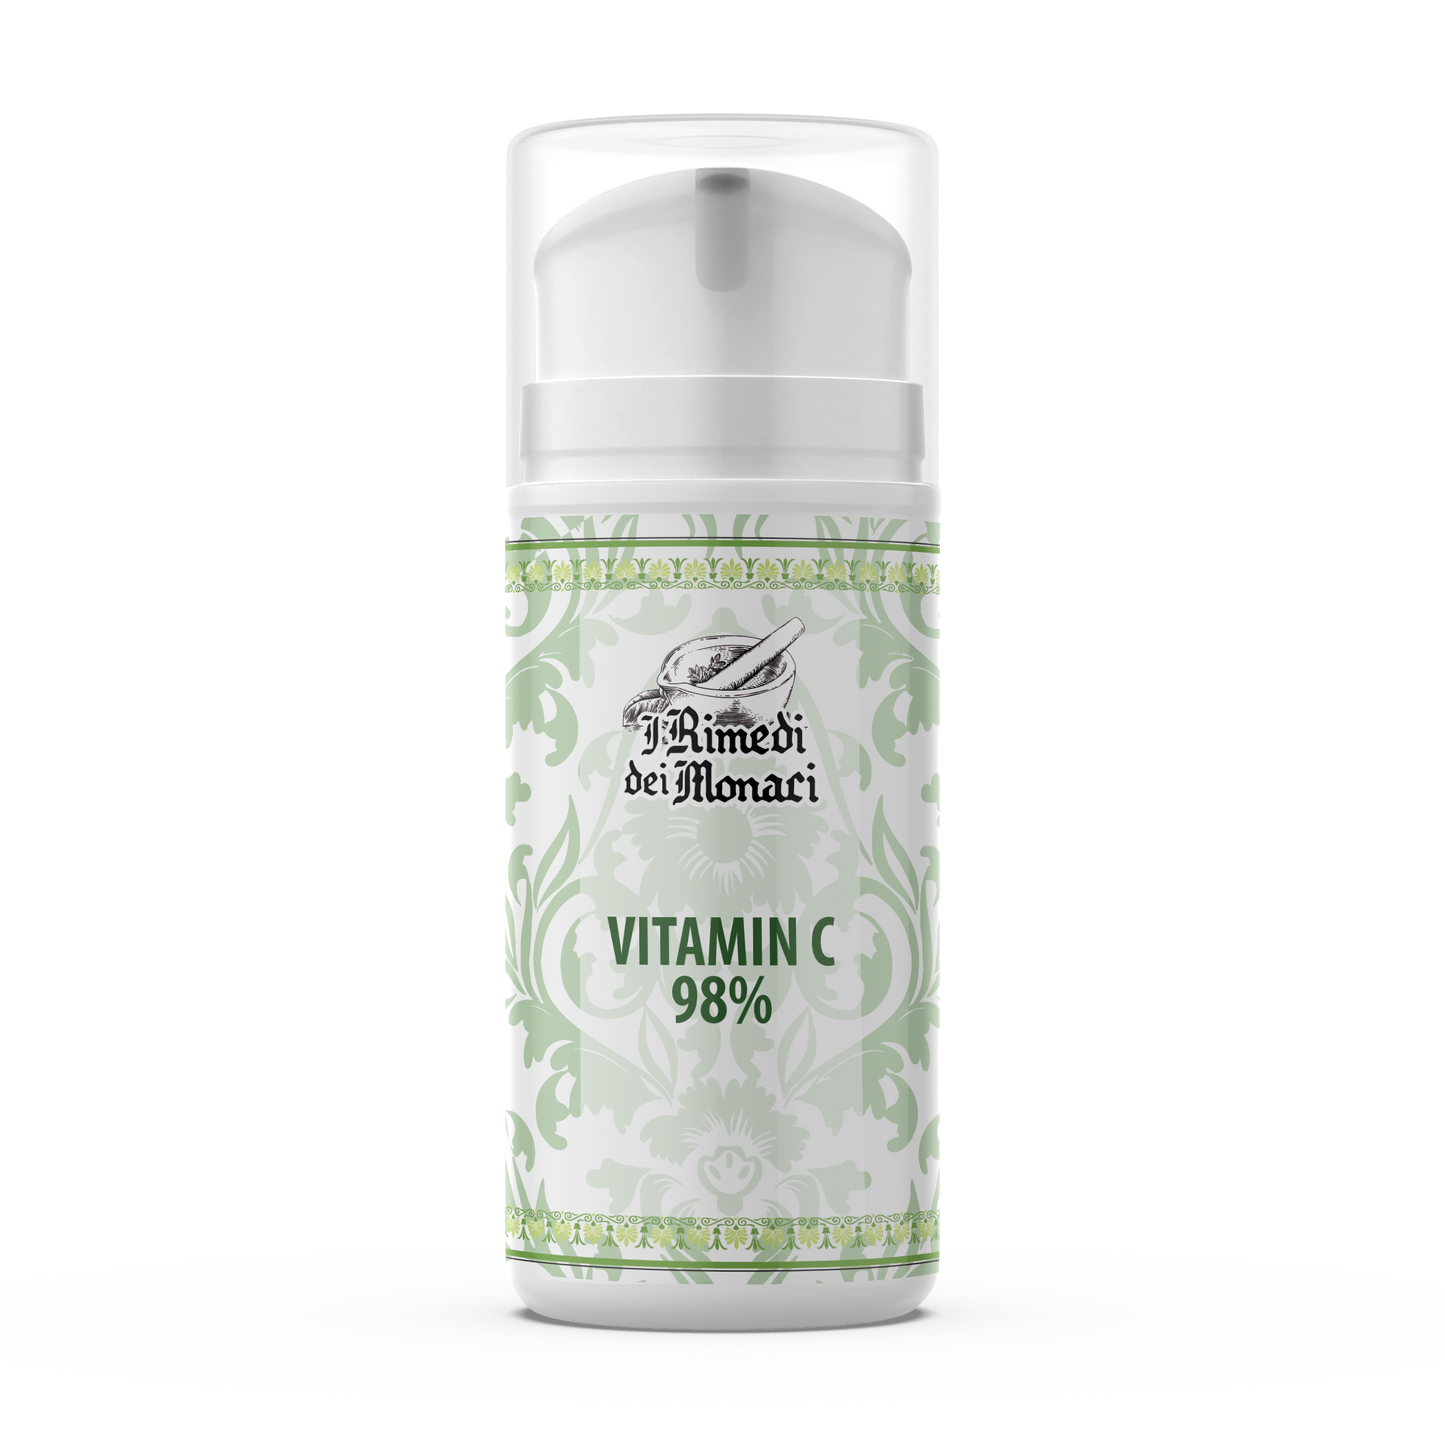 Vitamina C 100 ml • Protegge e Preserva la Bellezza Naturale • Combatte i Radicali Liberi • Pelle Liscia e Compatta